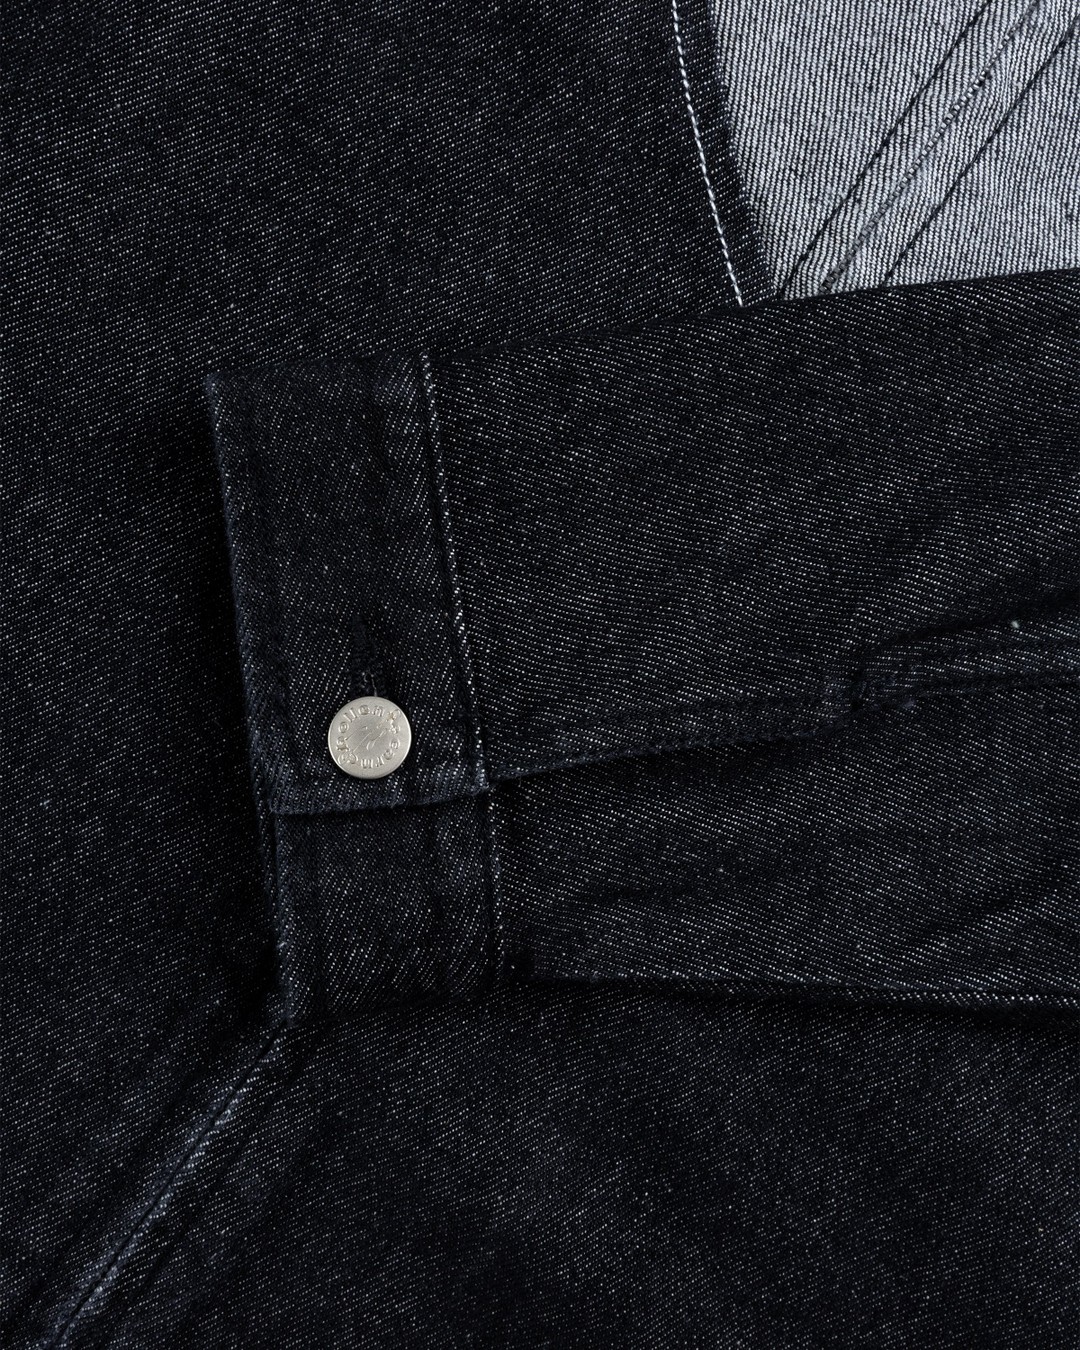 Carne Bollente – Heart Slice Jacket Washed Black - Outerwear - Black - Image 3